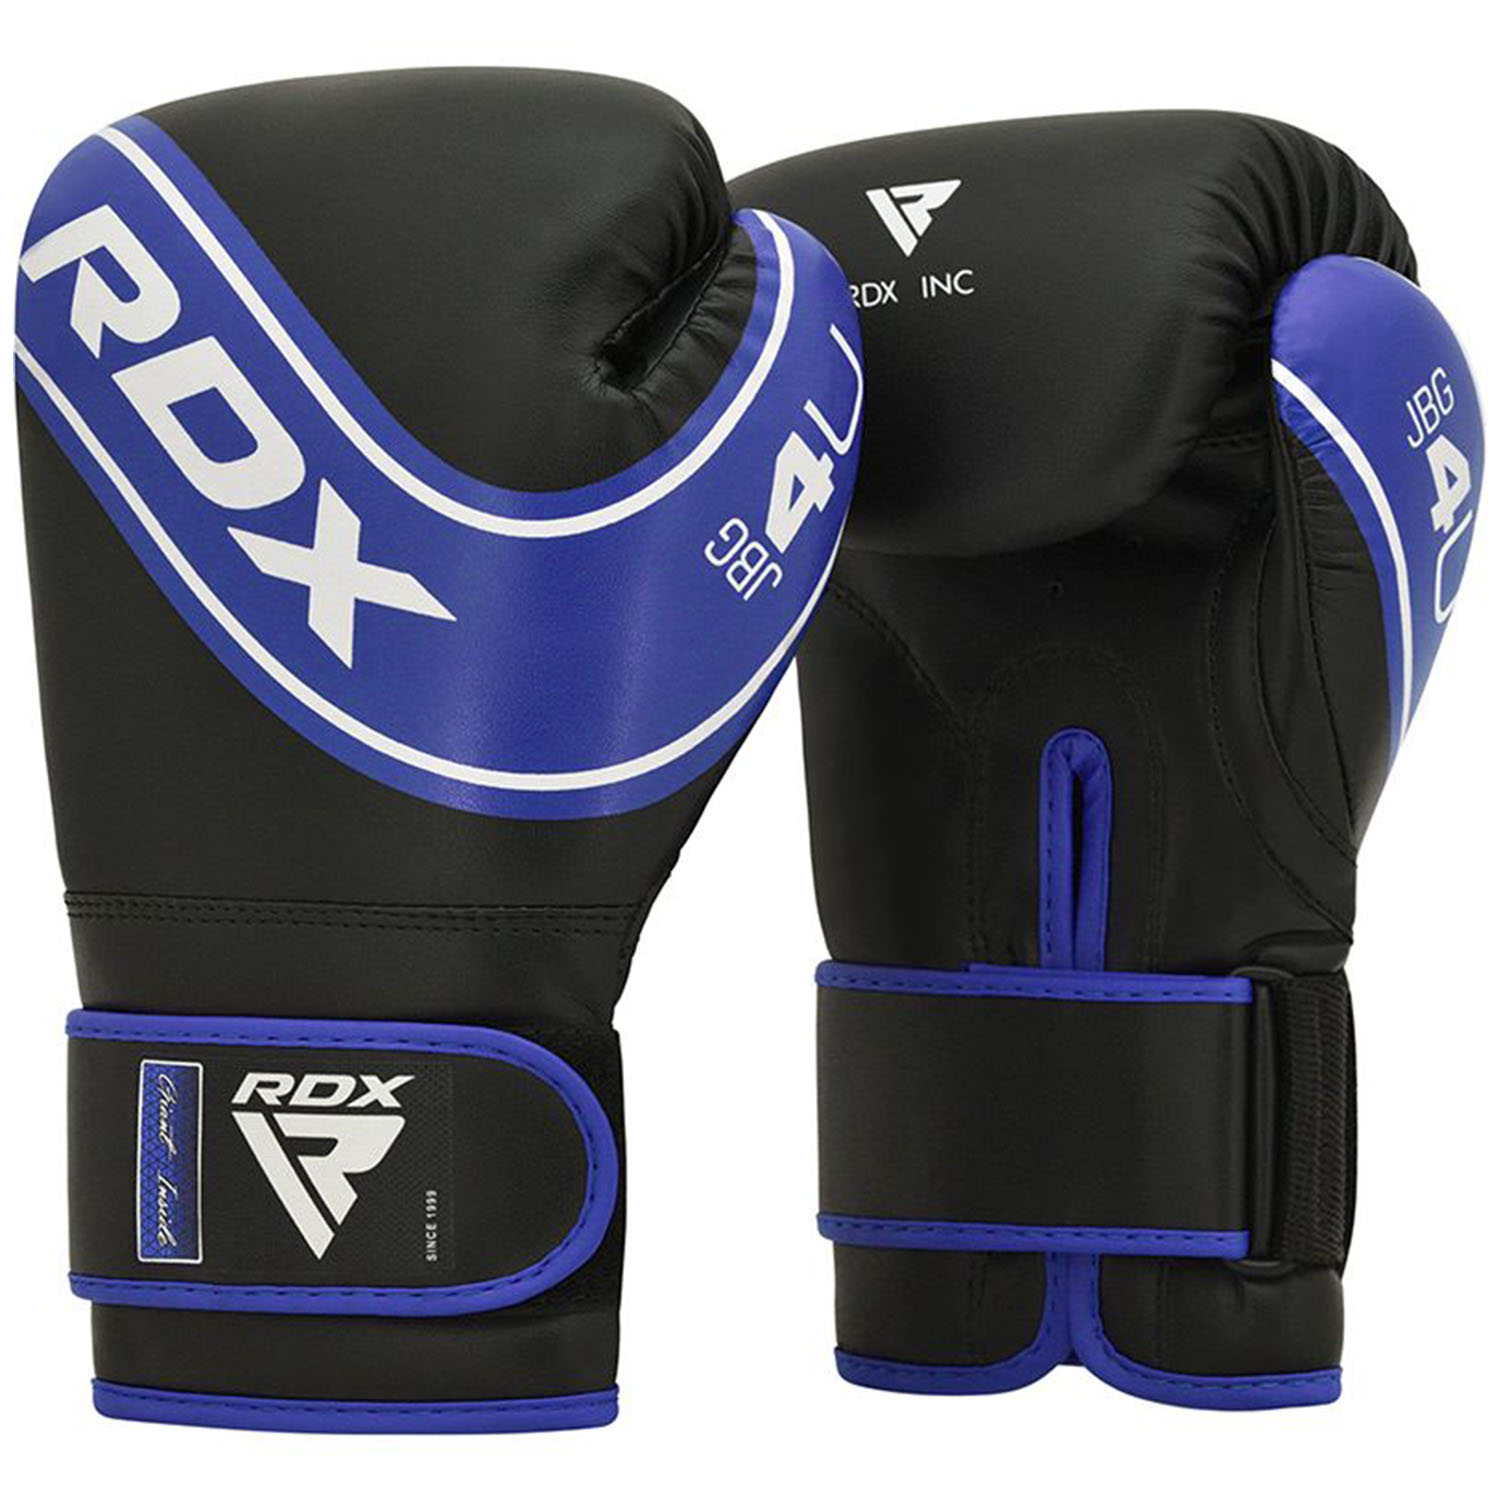 RDX Boxing Gloves, Kinder, 4B, black-blue